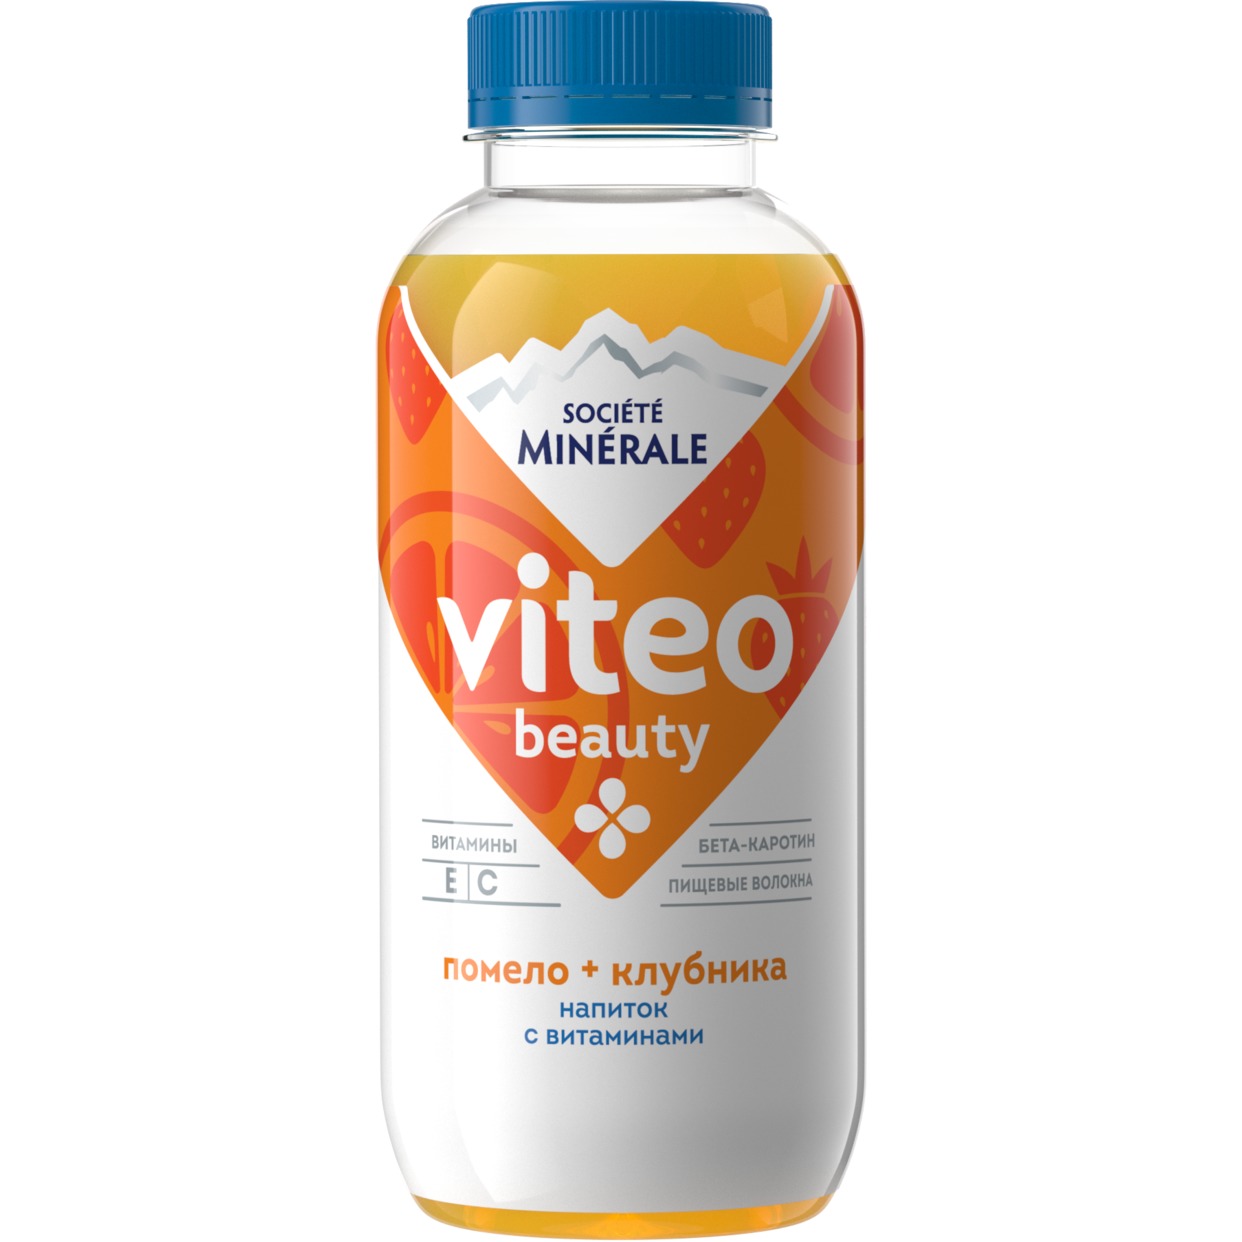 Напиток безалкогольный негазированный торговой марки «Societe Minerale Viteo» с витаминами вкус помело-клубника, 0,4 по акции в Пятерочке